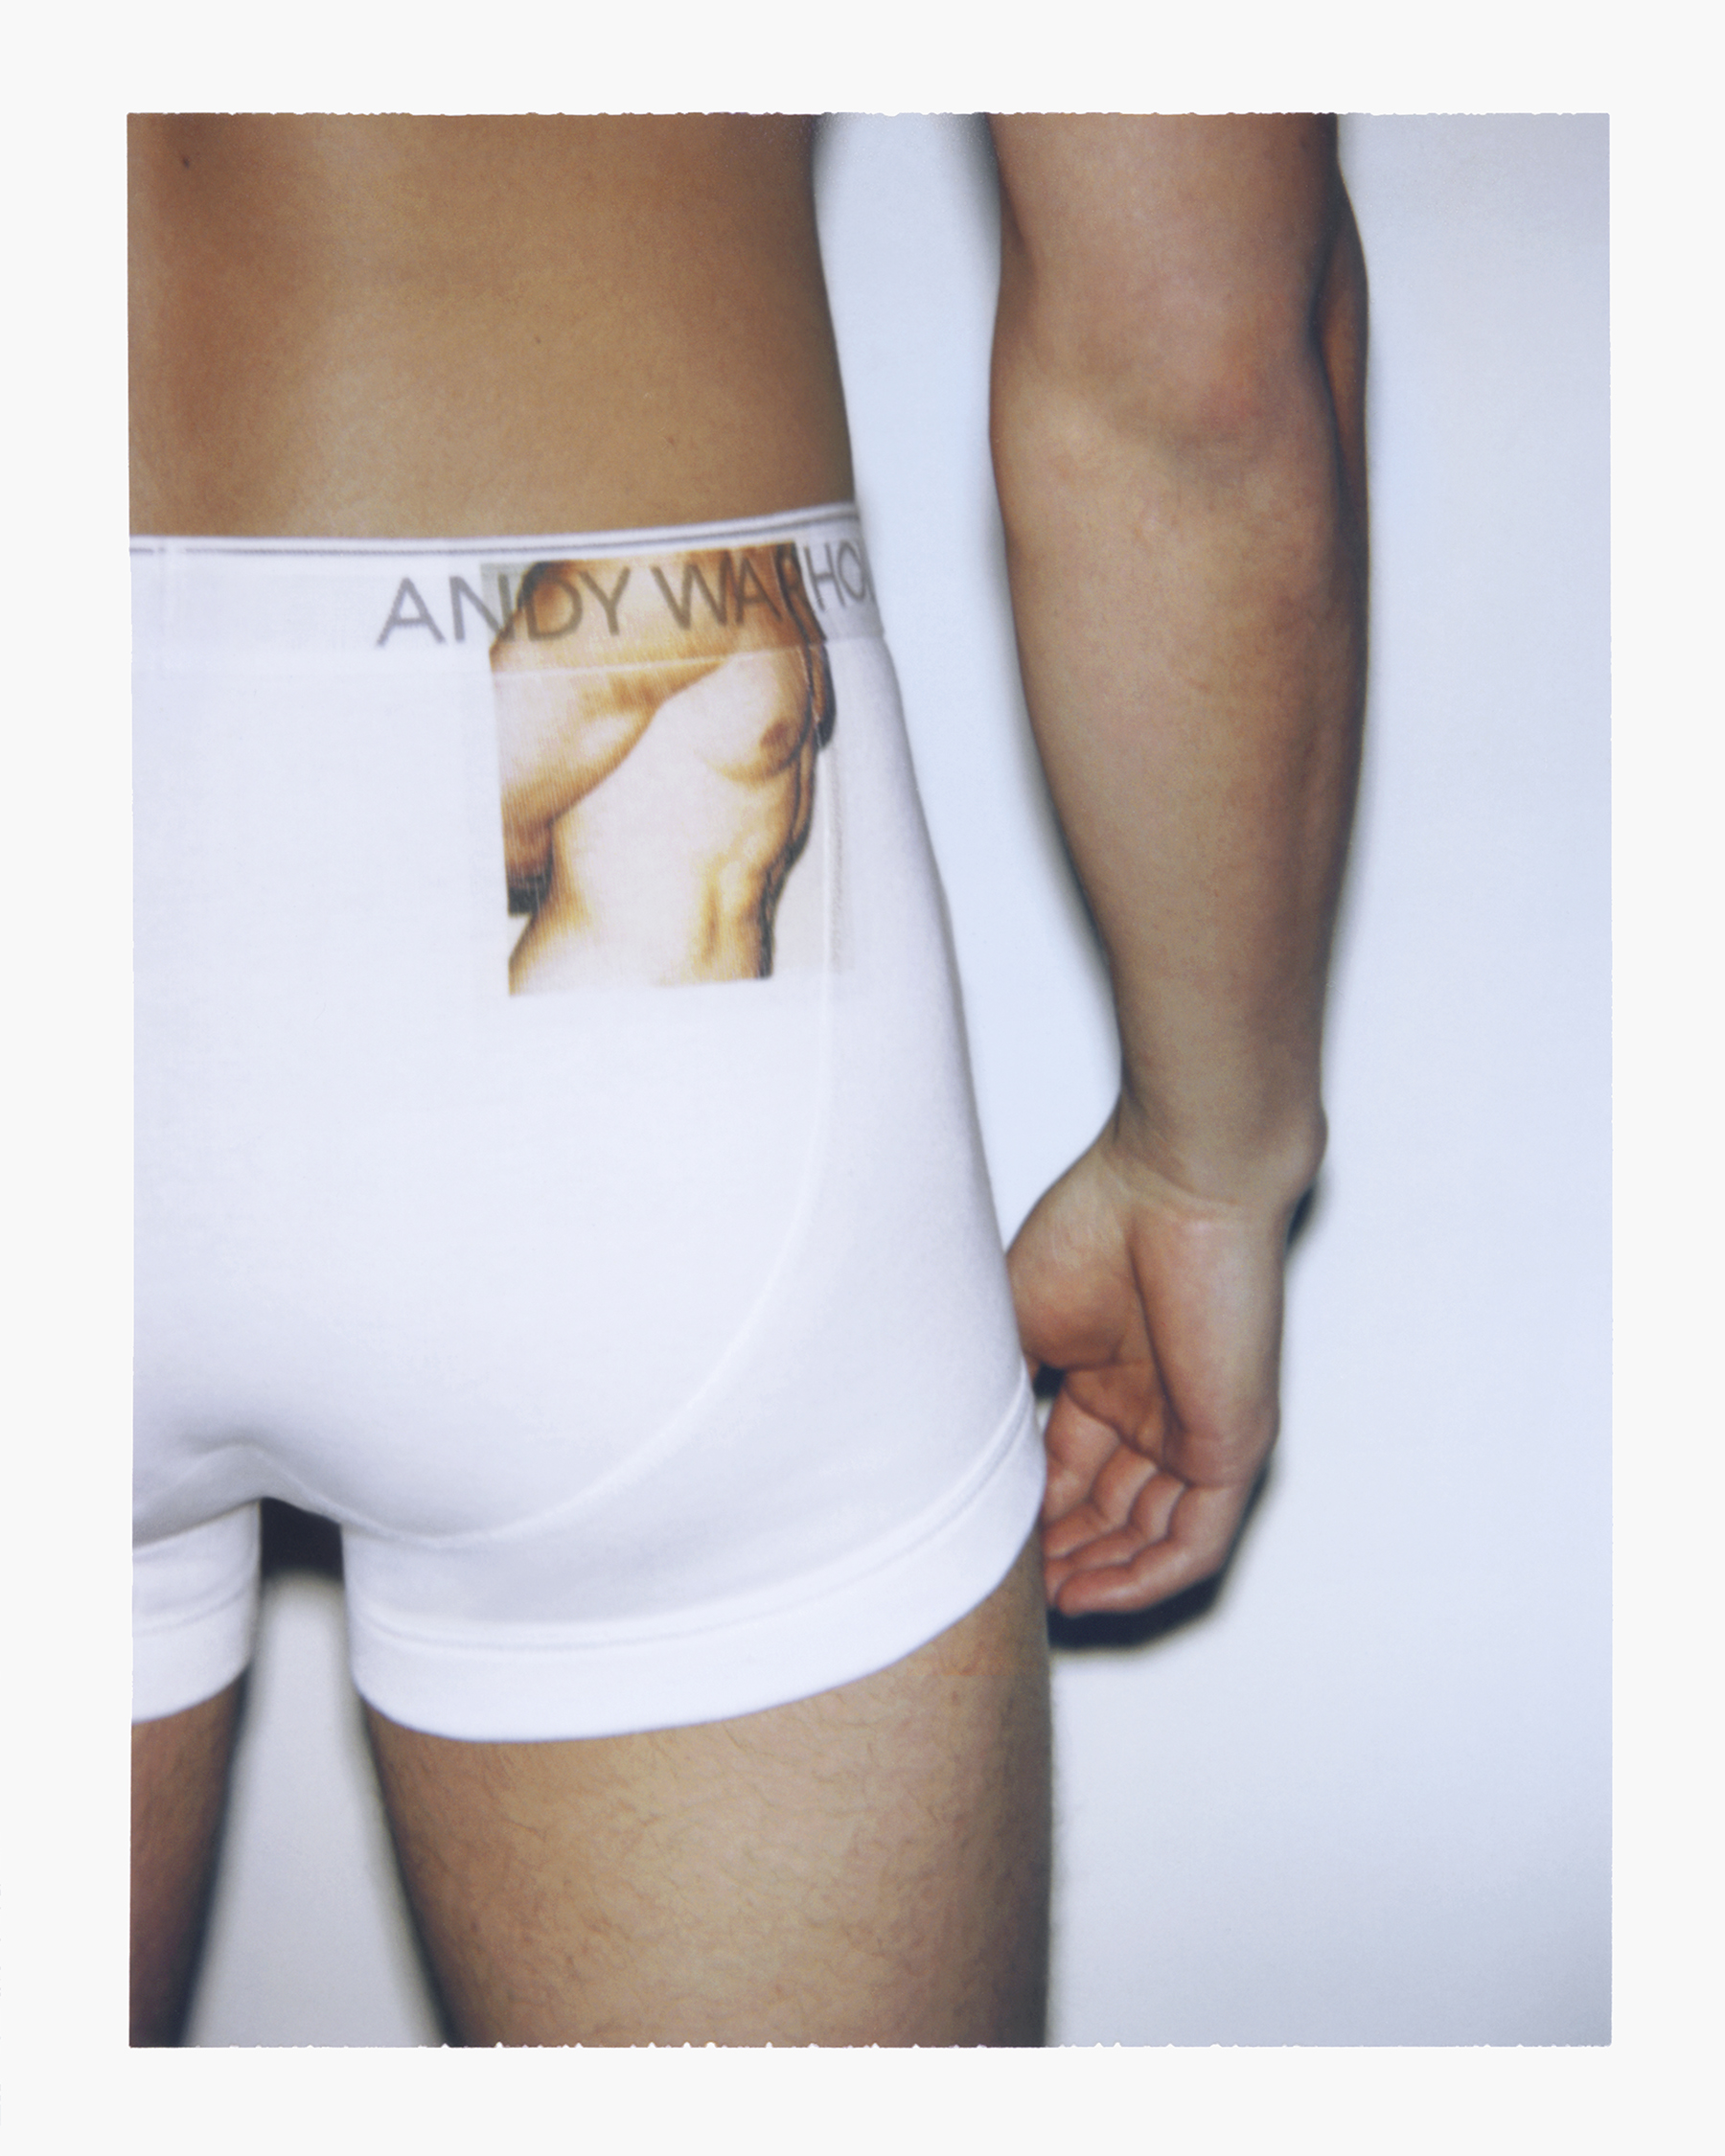 andy warhol calvin klein underwear